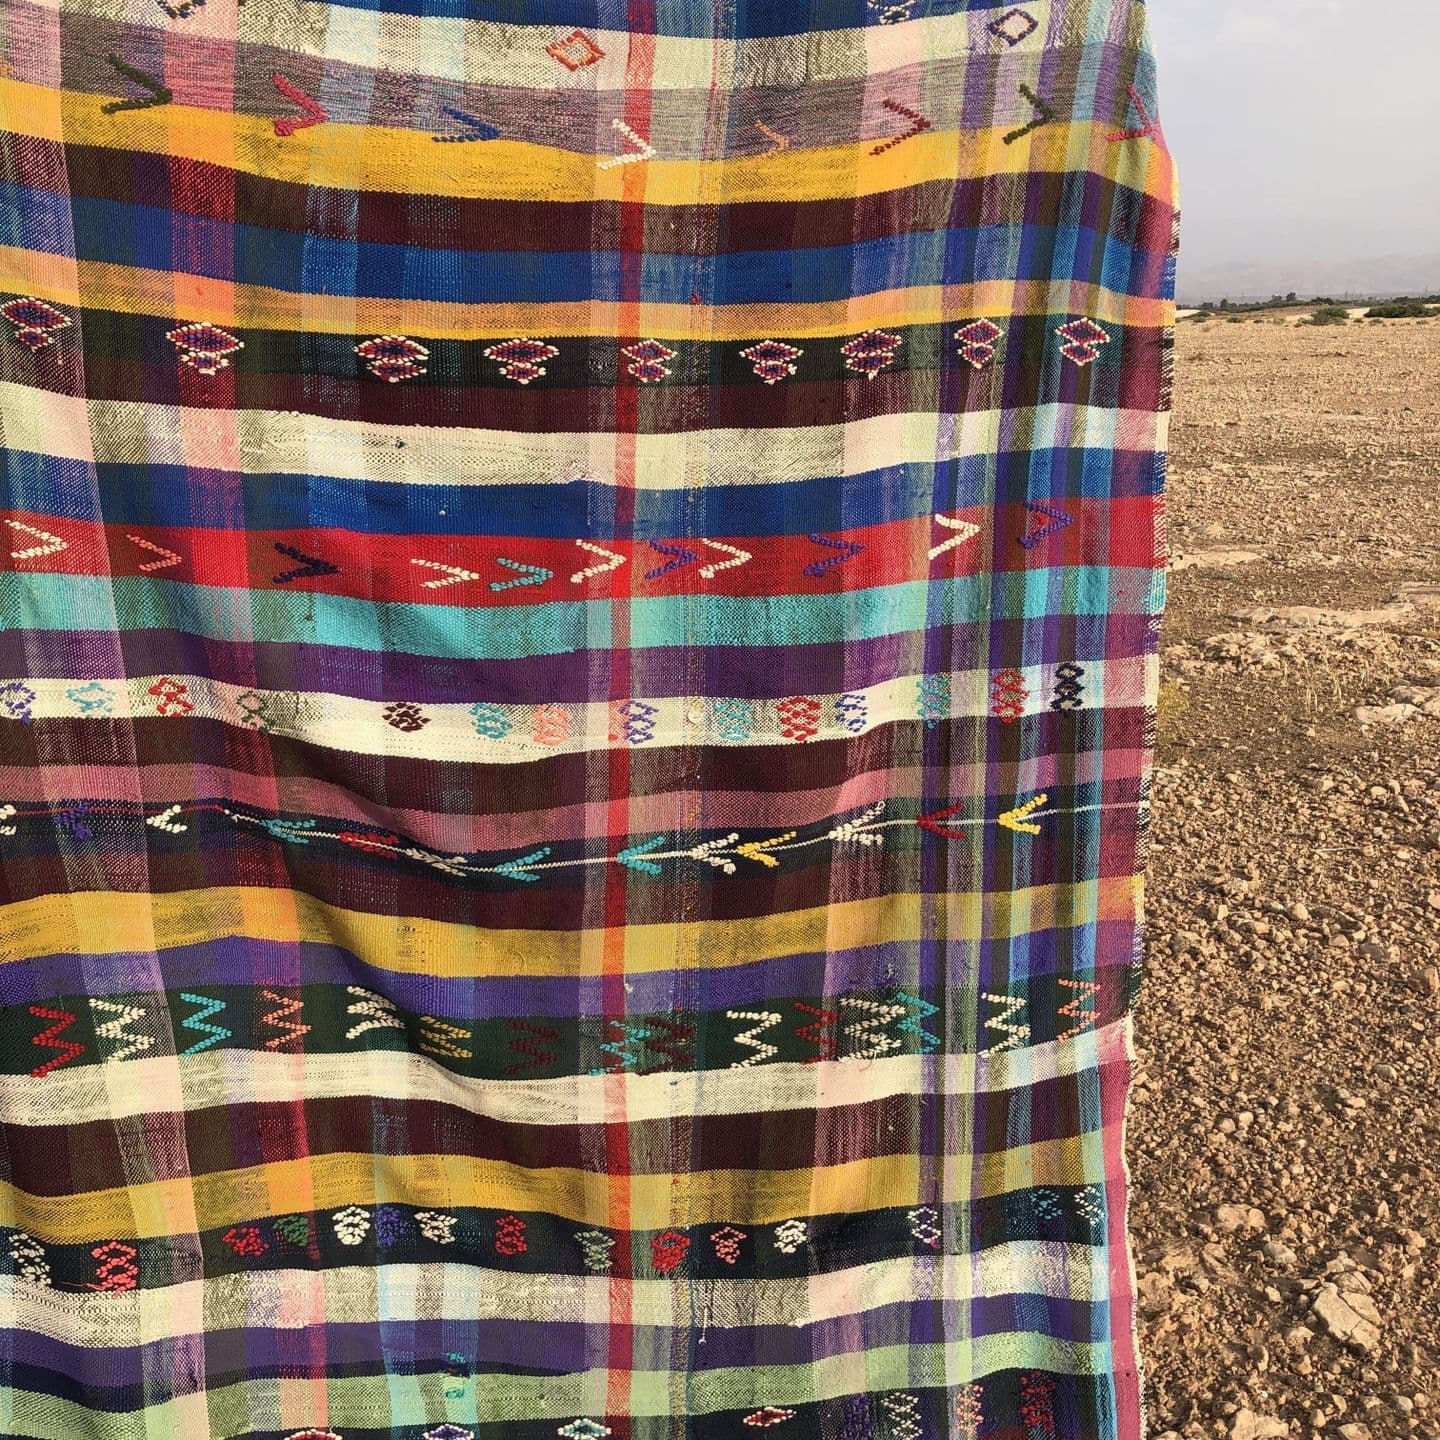 Berber blanket